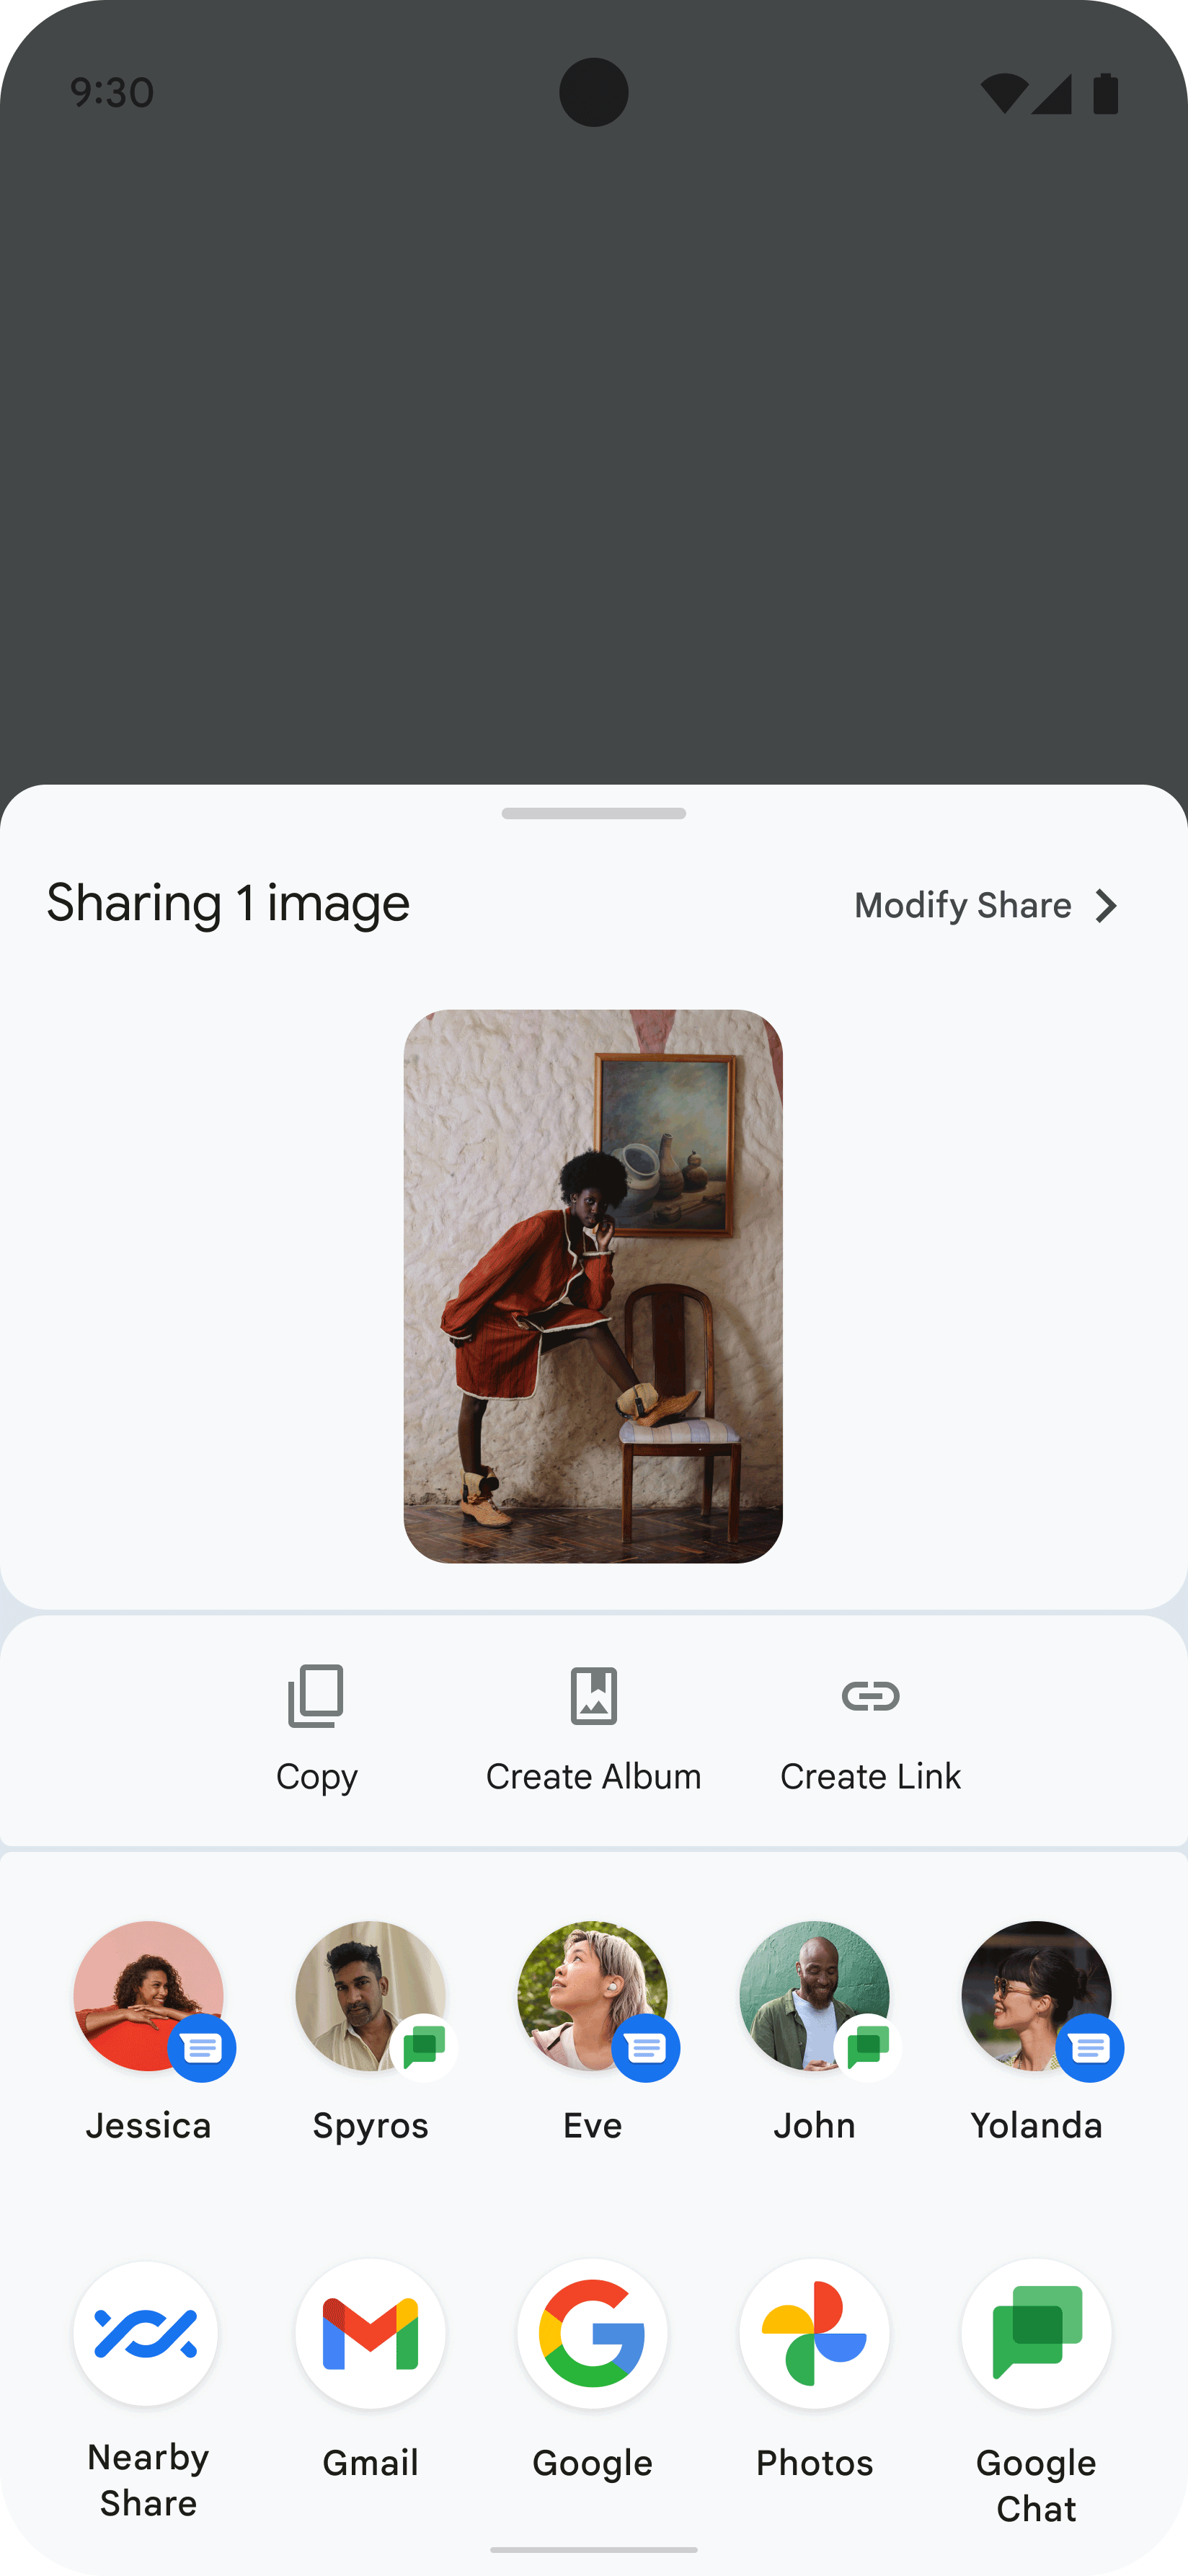 此圖片為應用程式上顯示的 Sharesheet，是使用者分享他人圖片的結果。Sharesheet 會顯示多個圖示，代表可與其分享該圖片的聯絡人和應用程式。